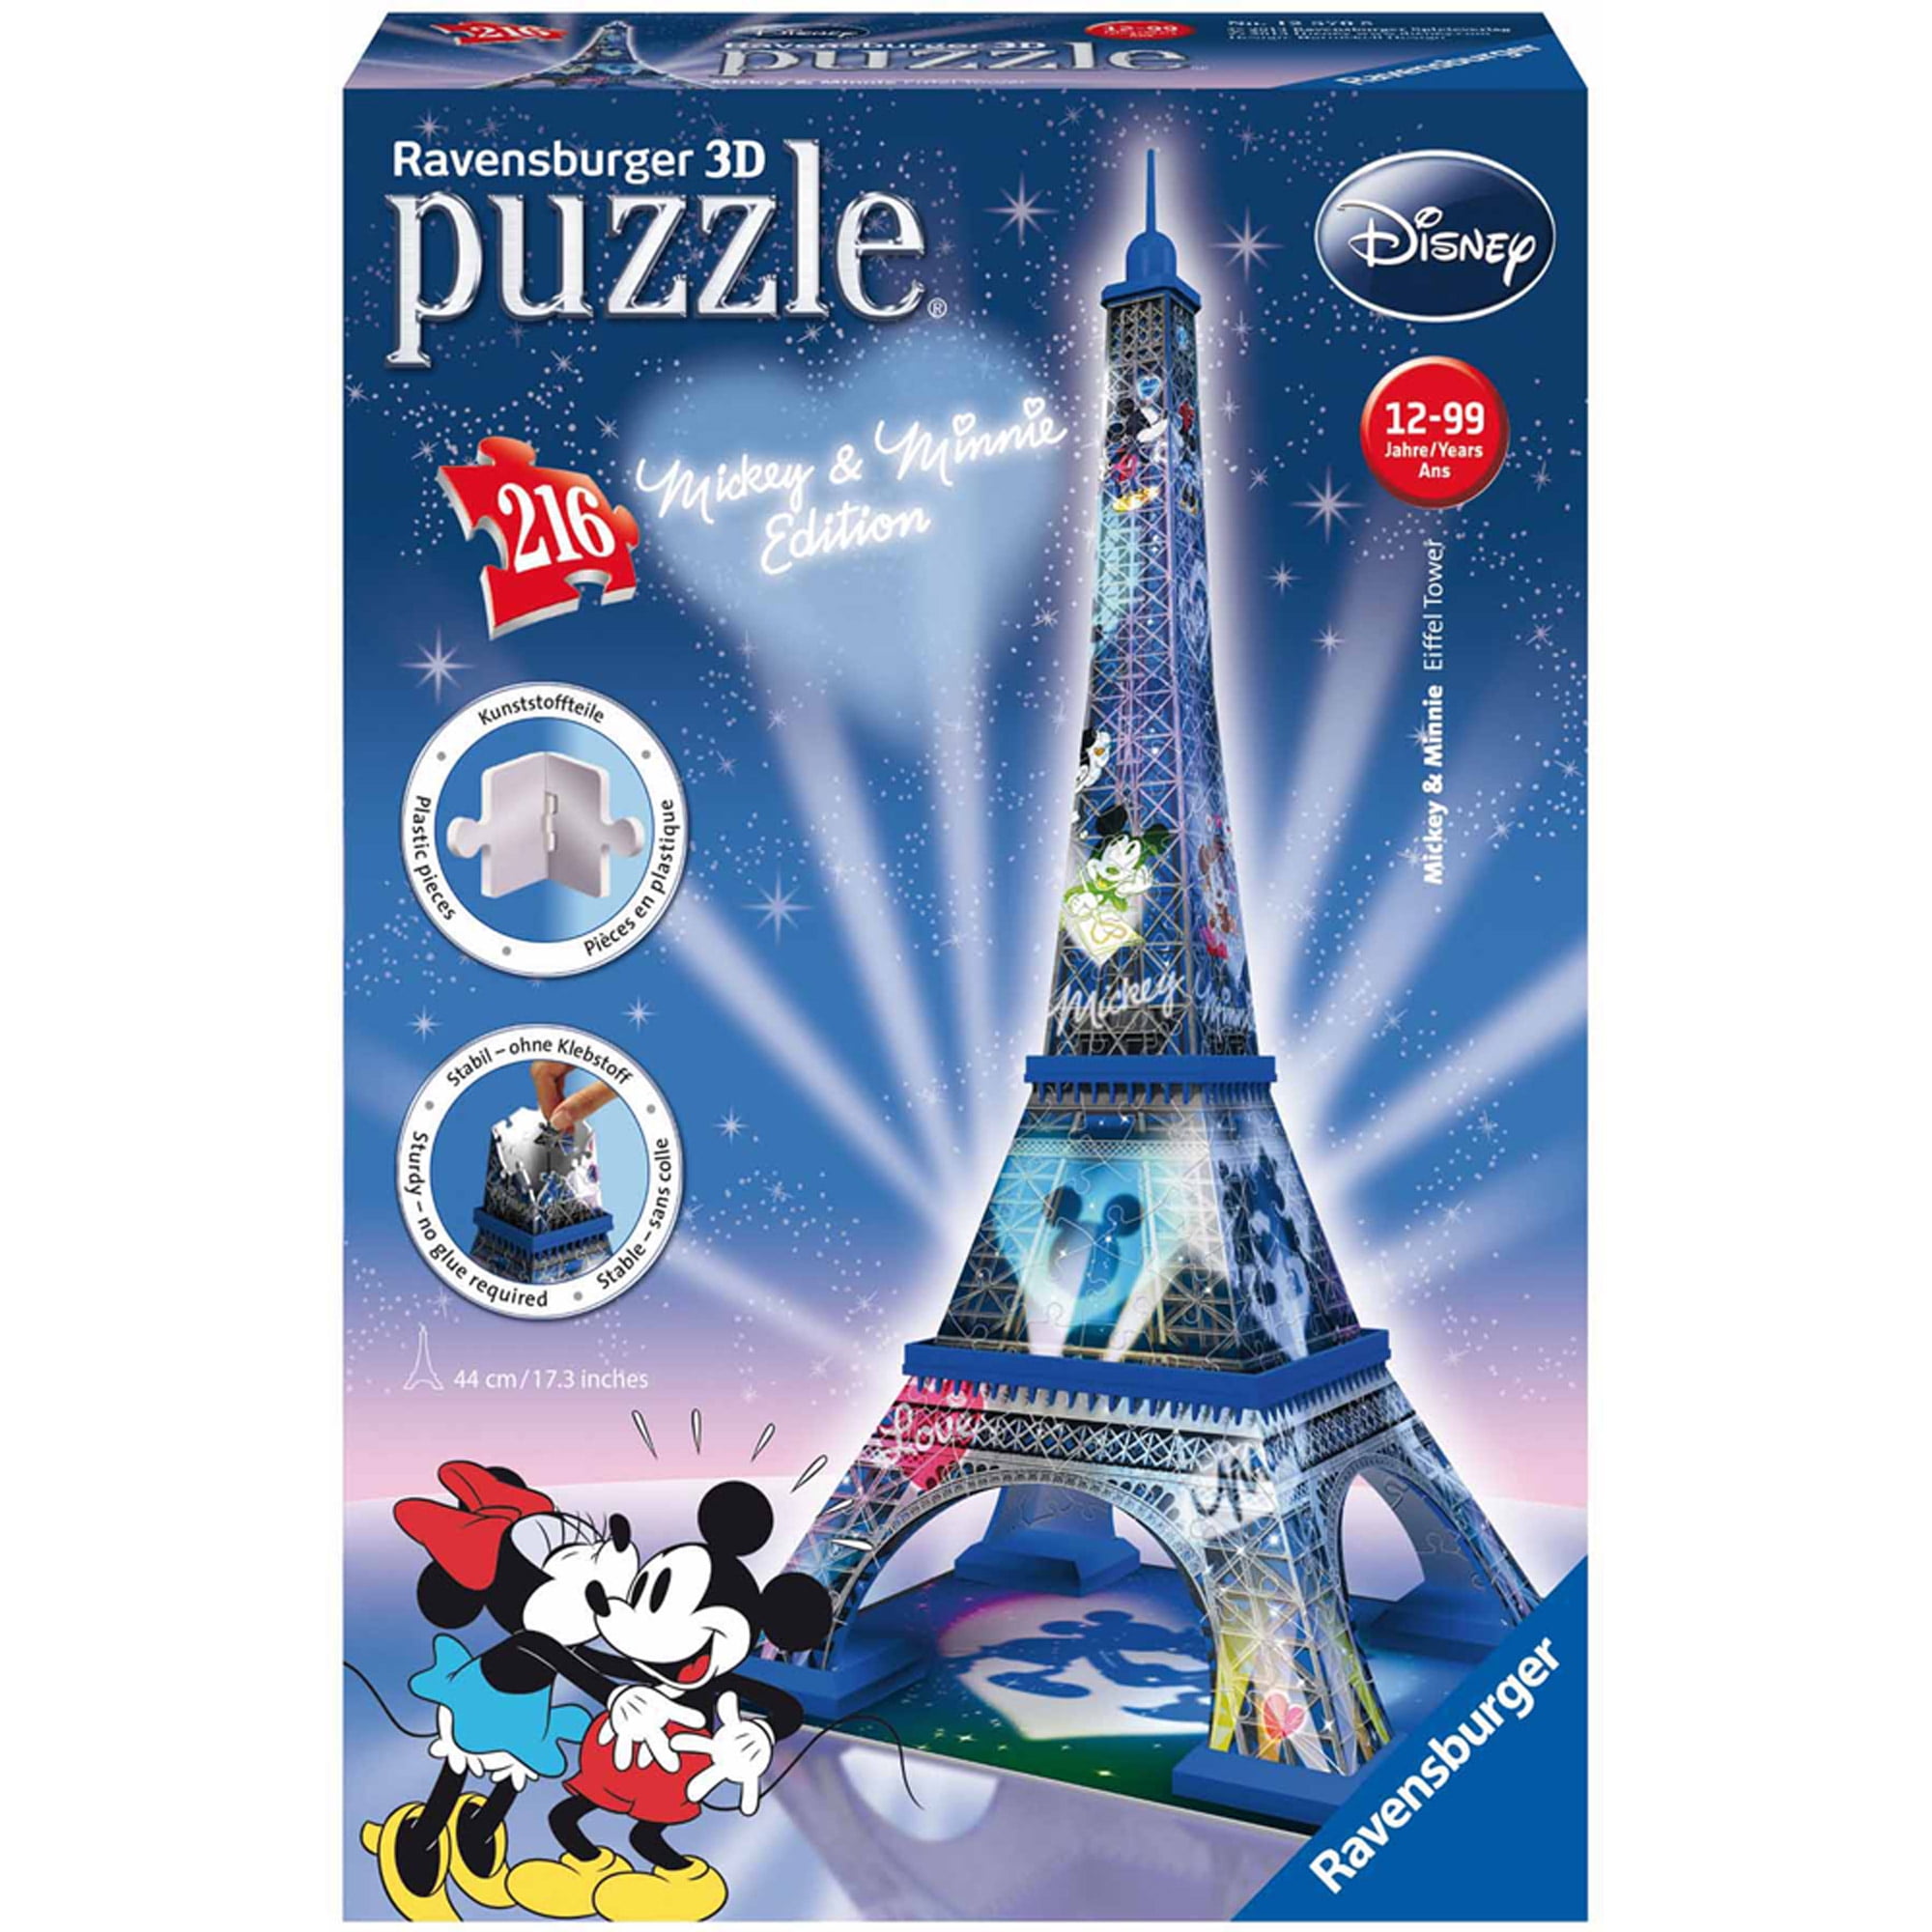 Ravensburger Eiffel Tower - 216 Piece 3D Jigsaw Puzzle – Puzzles Galore